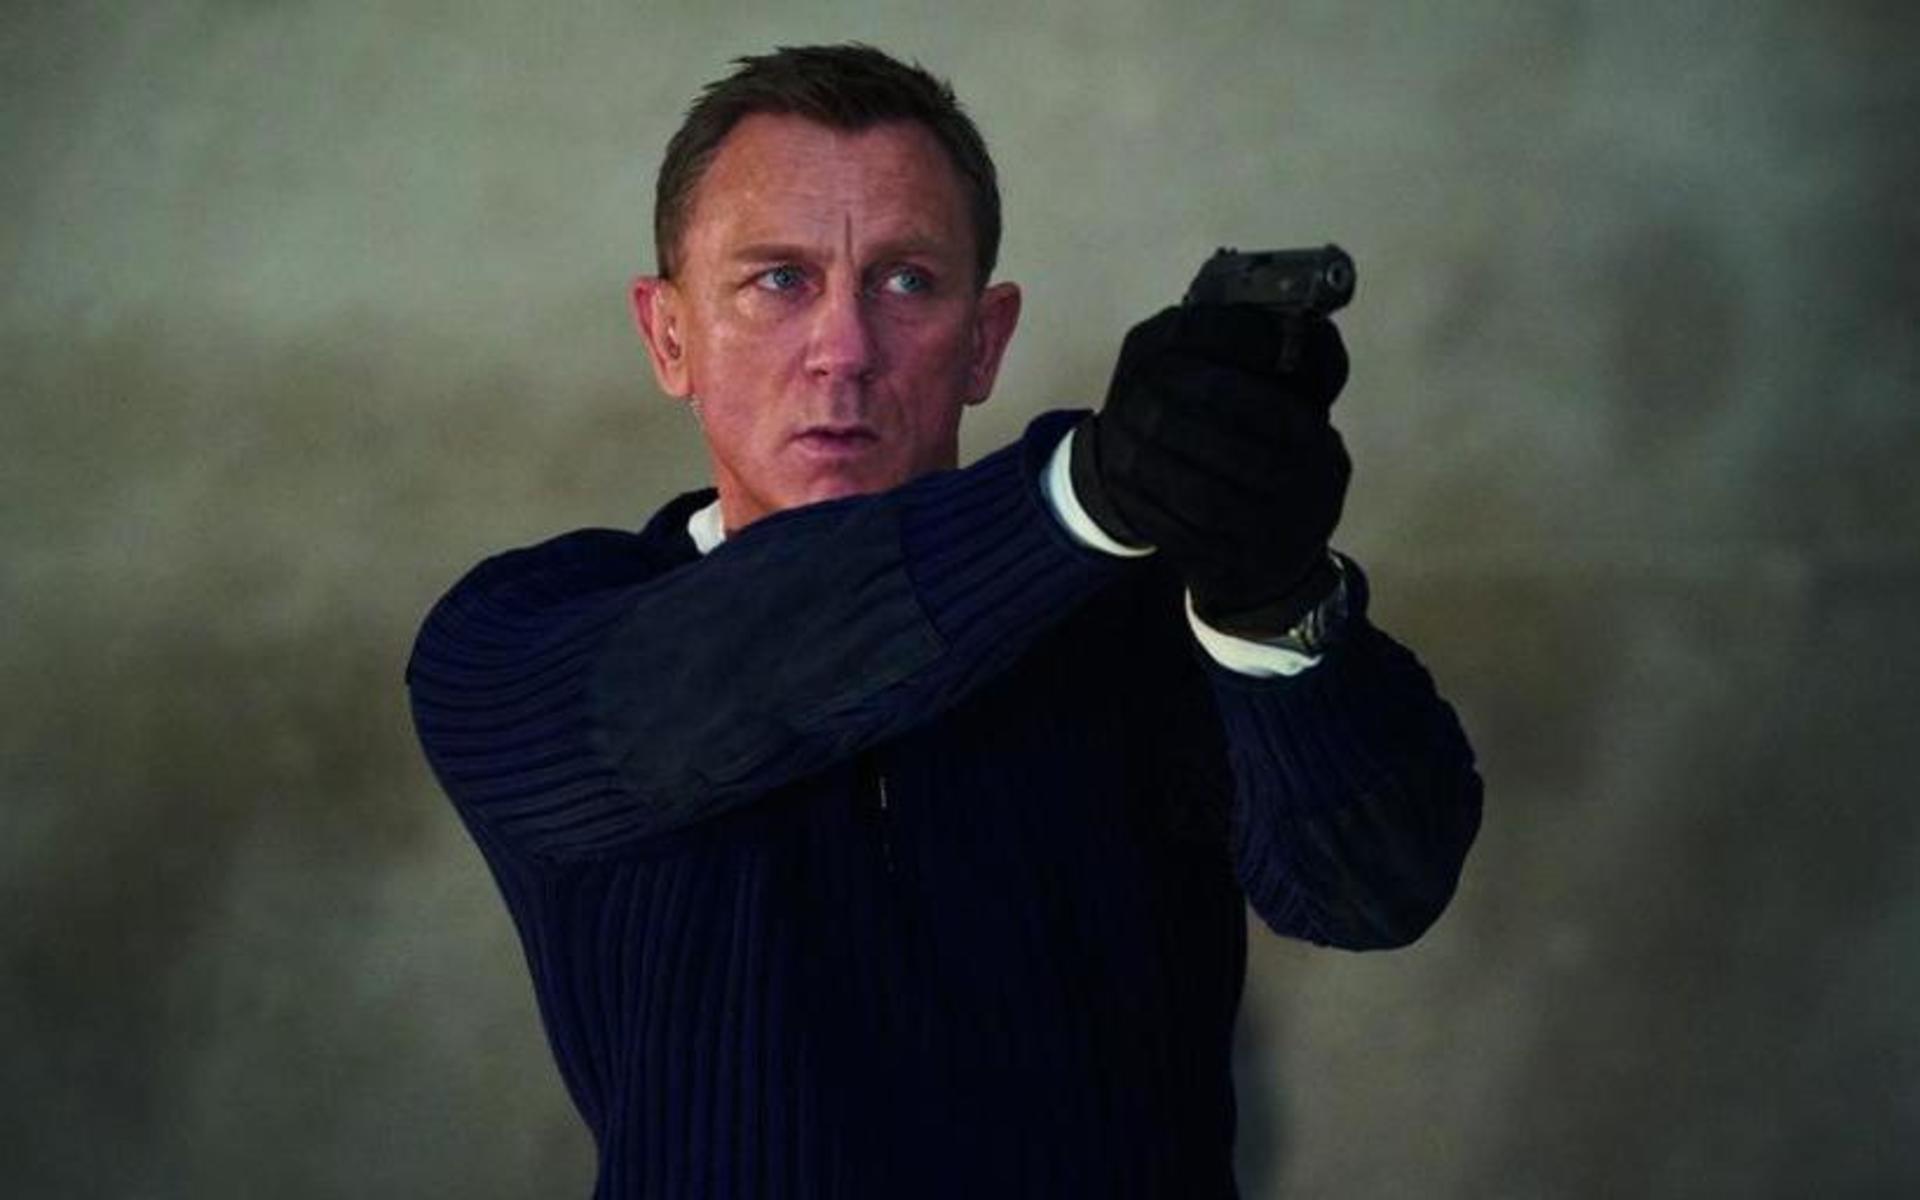 James Bond (Daniel Craig) tar sikte i ”No time to die” som fick svensk biopremiär 30 september förra året. Då var intresset rekordstort för filmen och flera dagar före premiären hade över 63 000 biljetter gått åt.